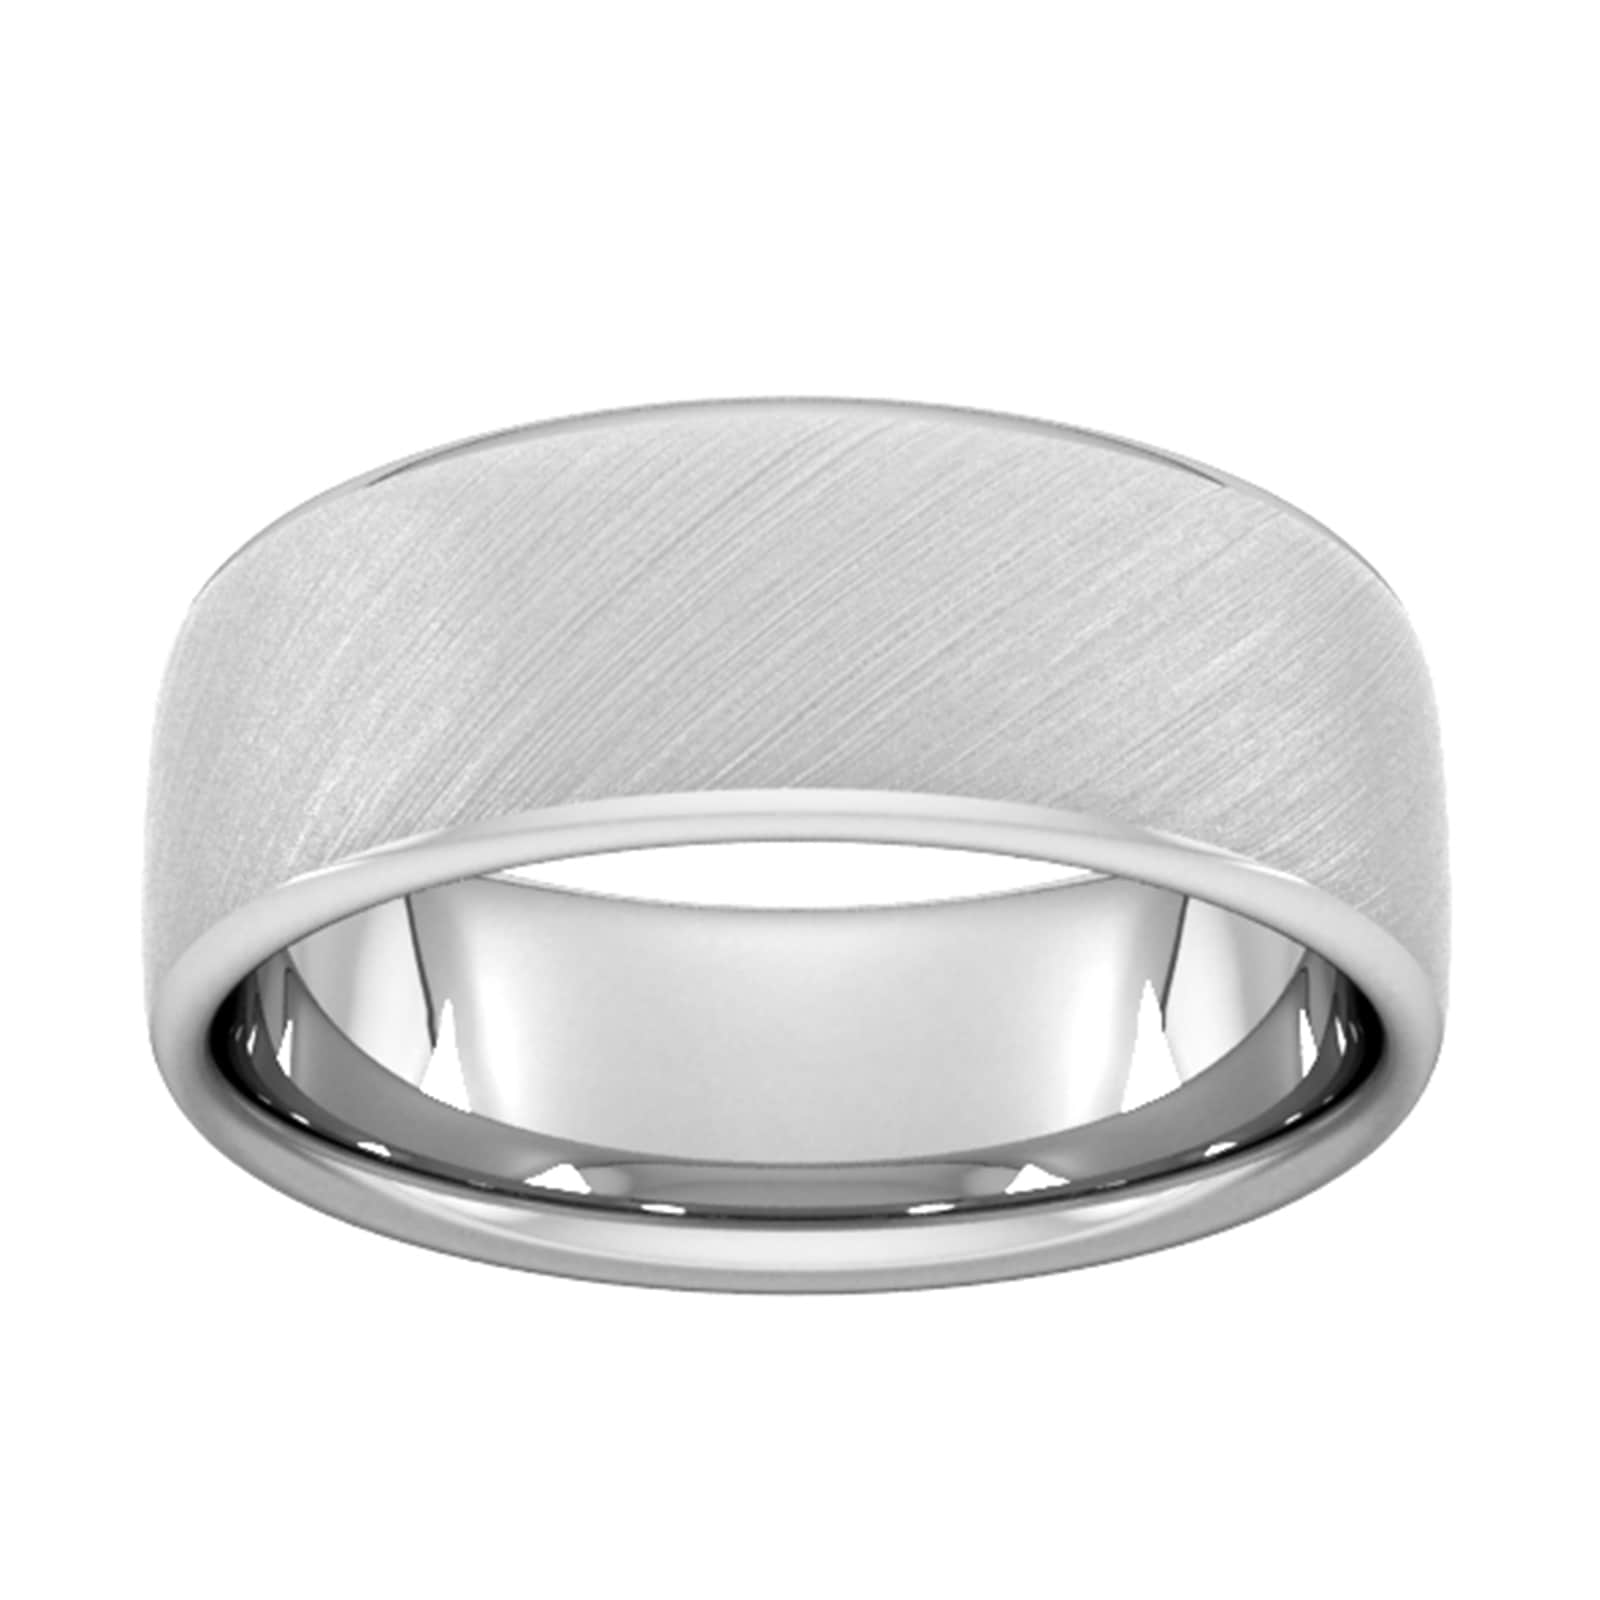 8mm Slight Court Extra Heavy Diagonal Matt Finish Wedding Ring In Platinum - Ring Size Q